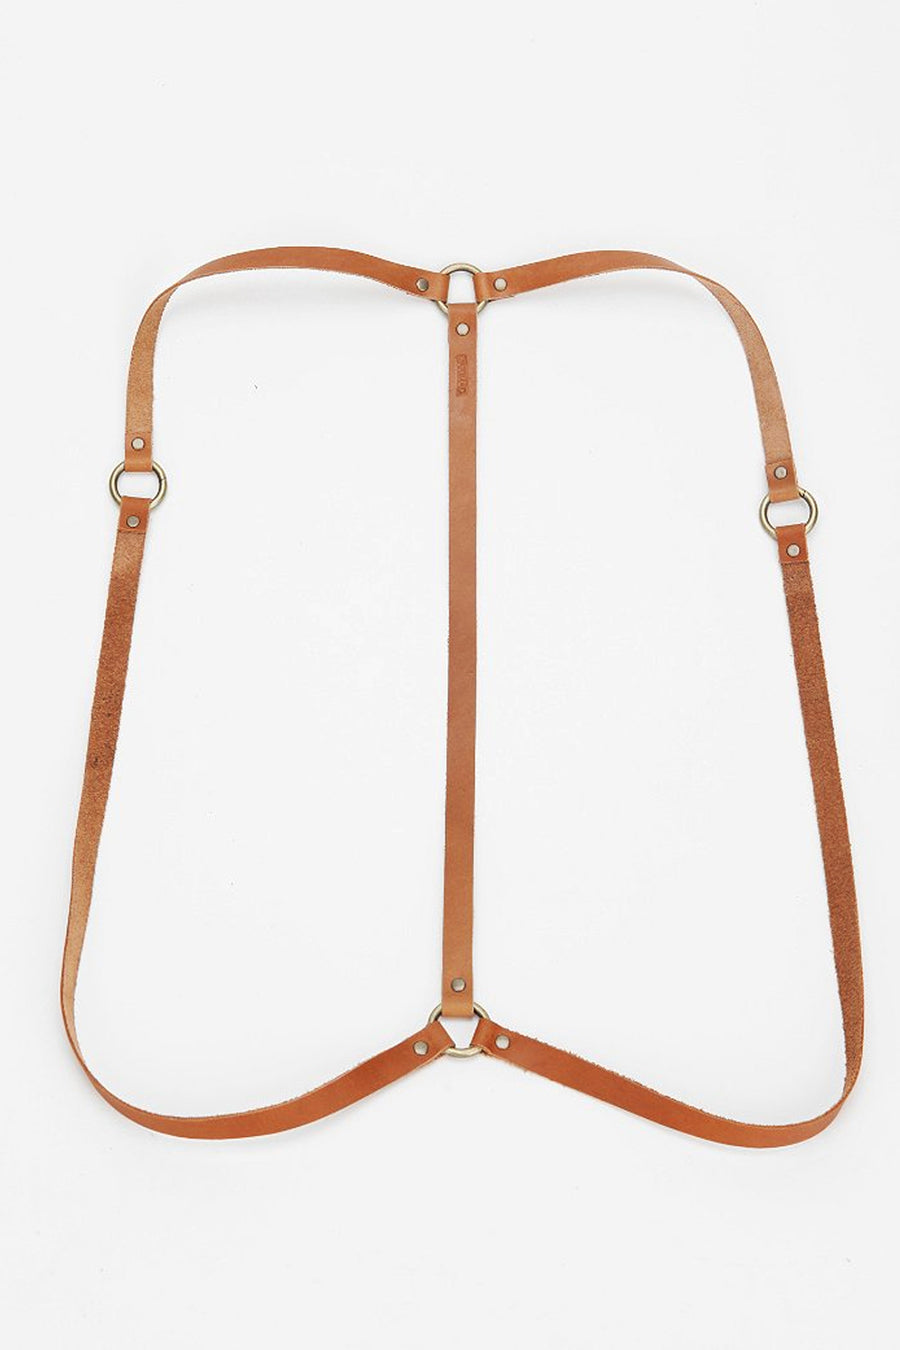 Simple Drape Harness in Tan/Brass - JAKIMAC
 - 5